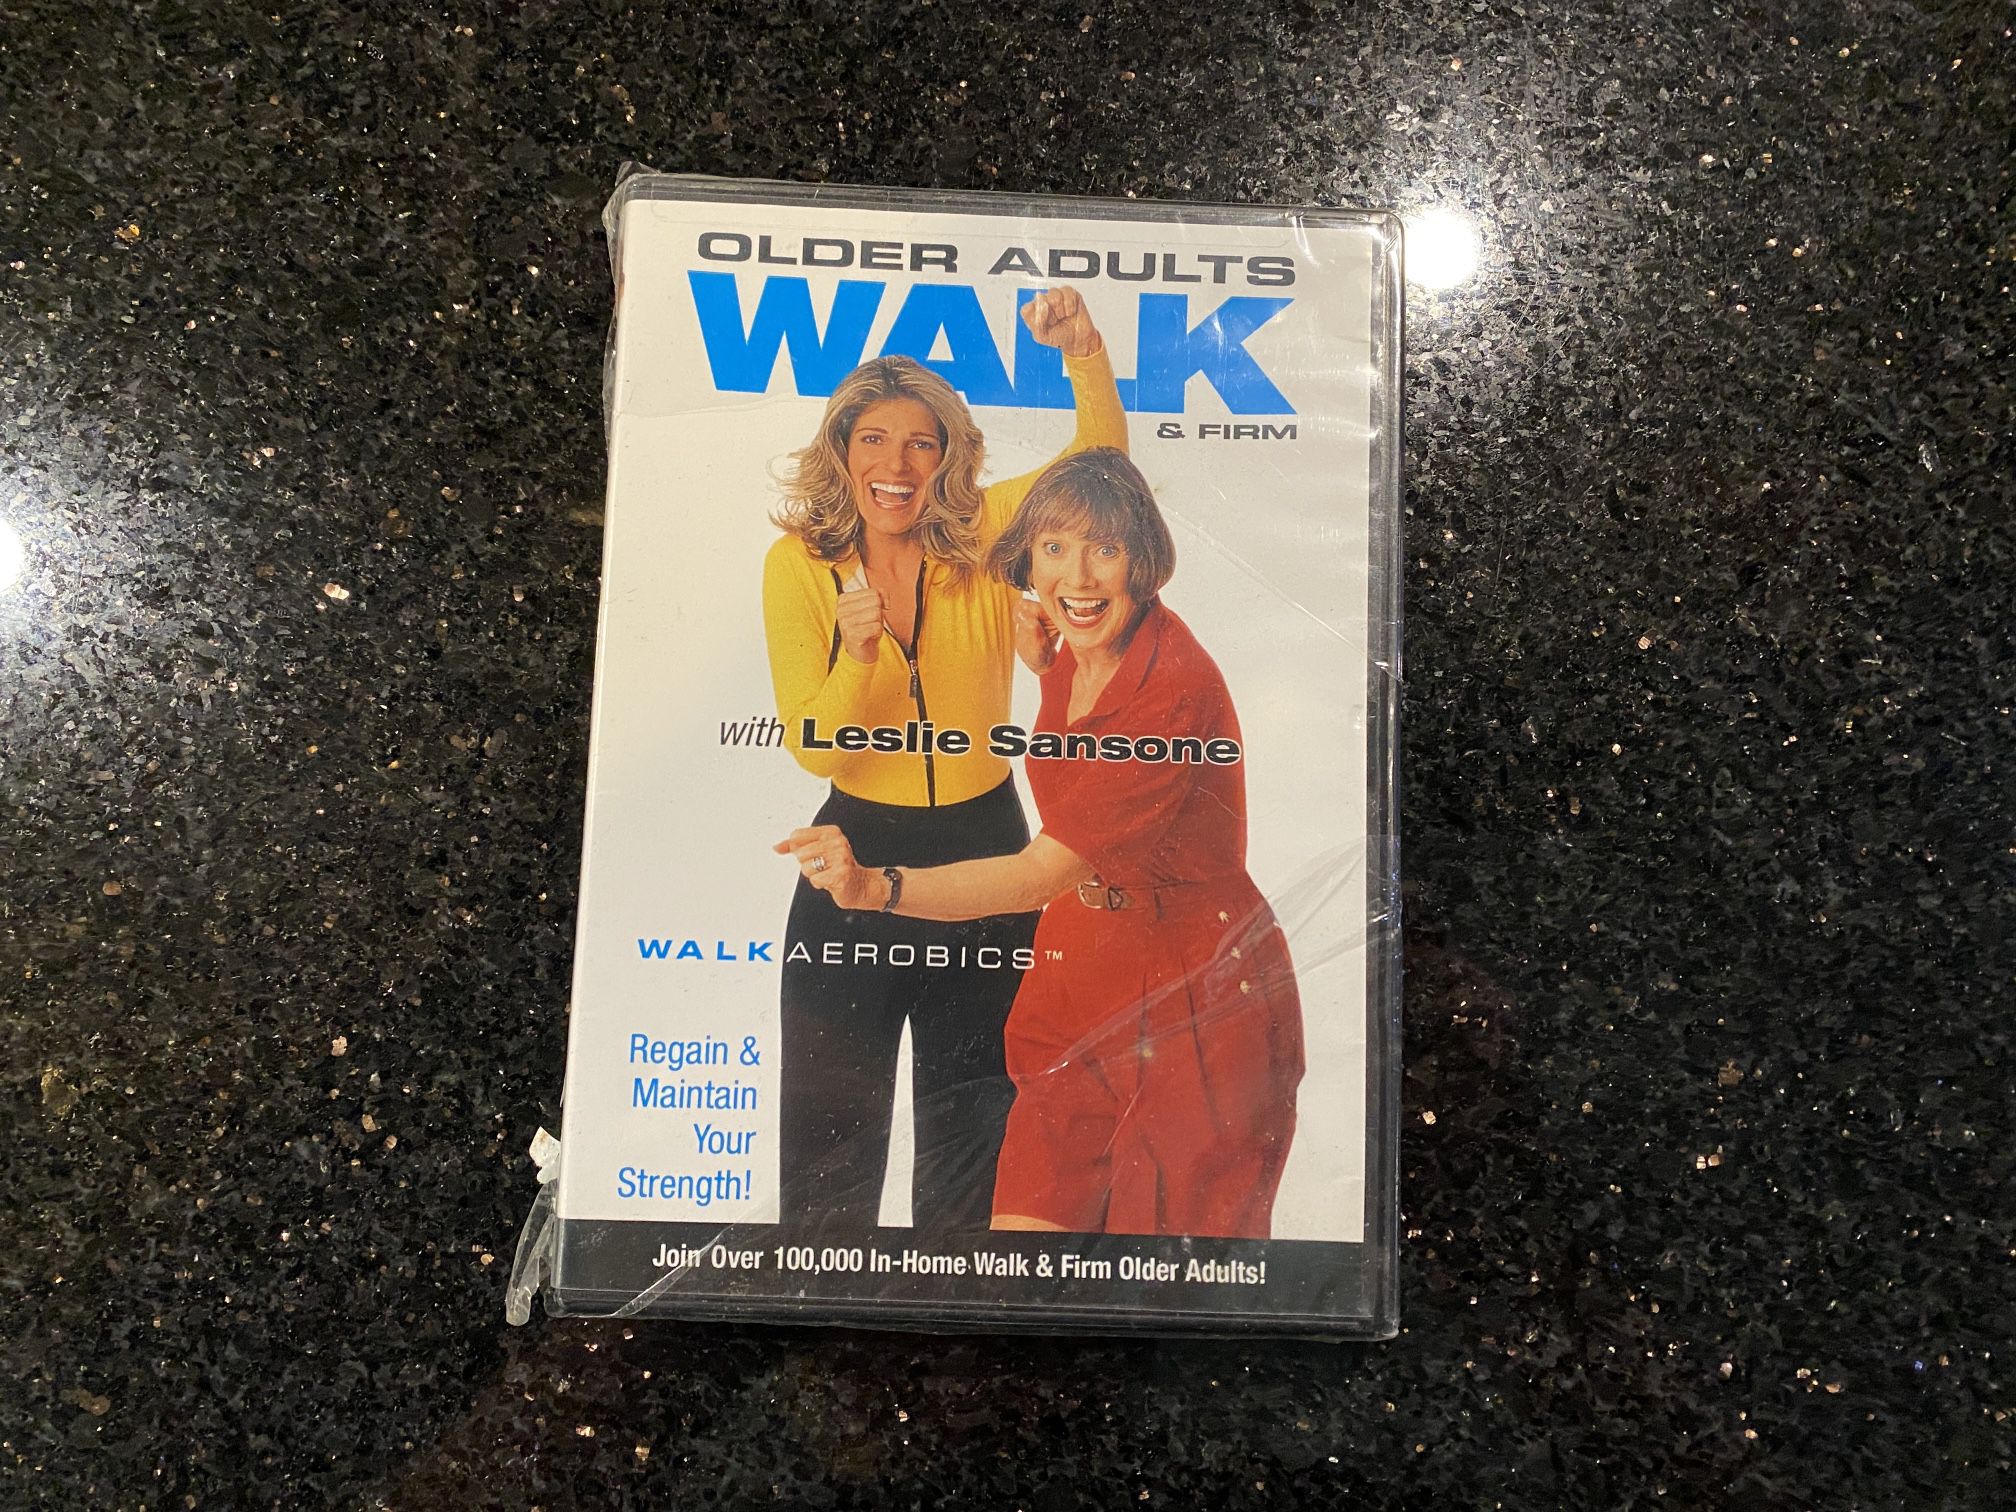 Leslie Sansone for Seniors Walk Aerobics DVD